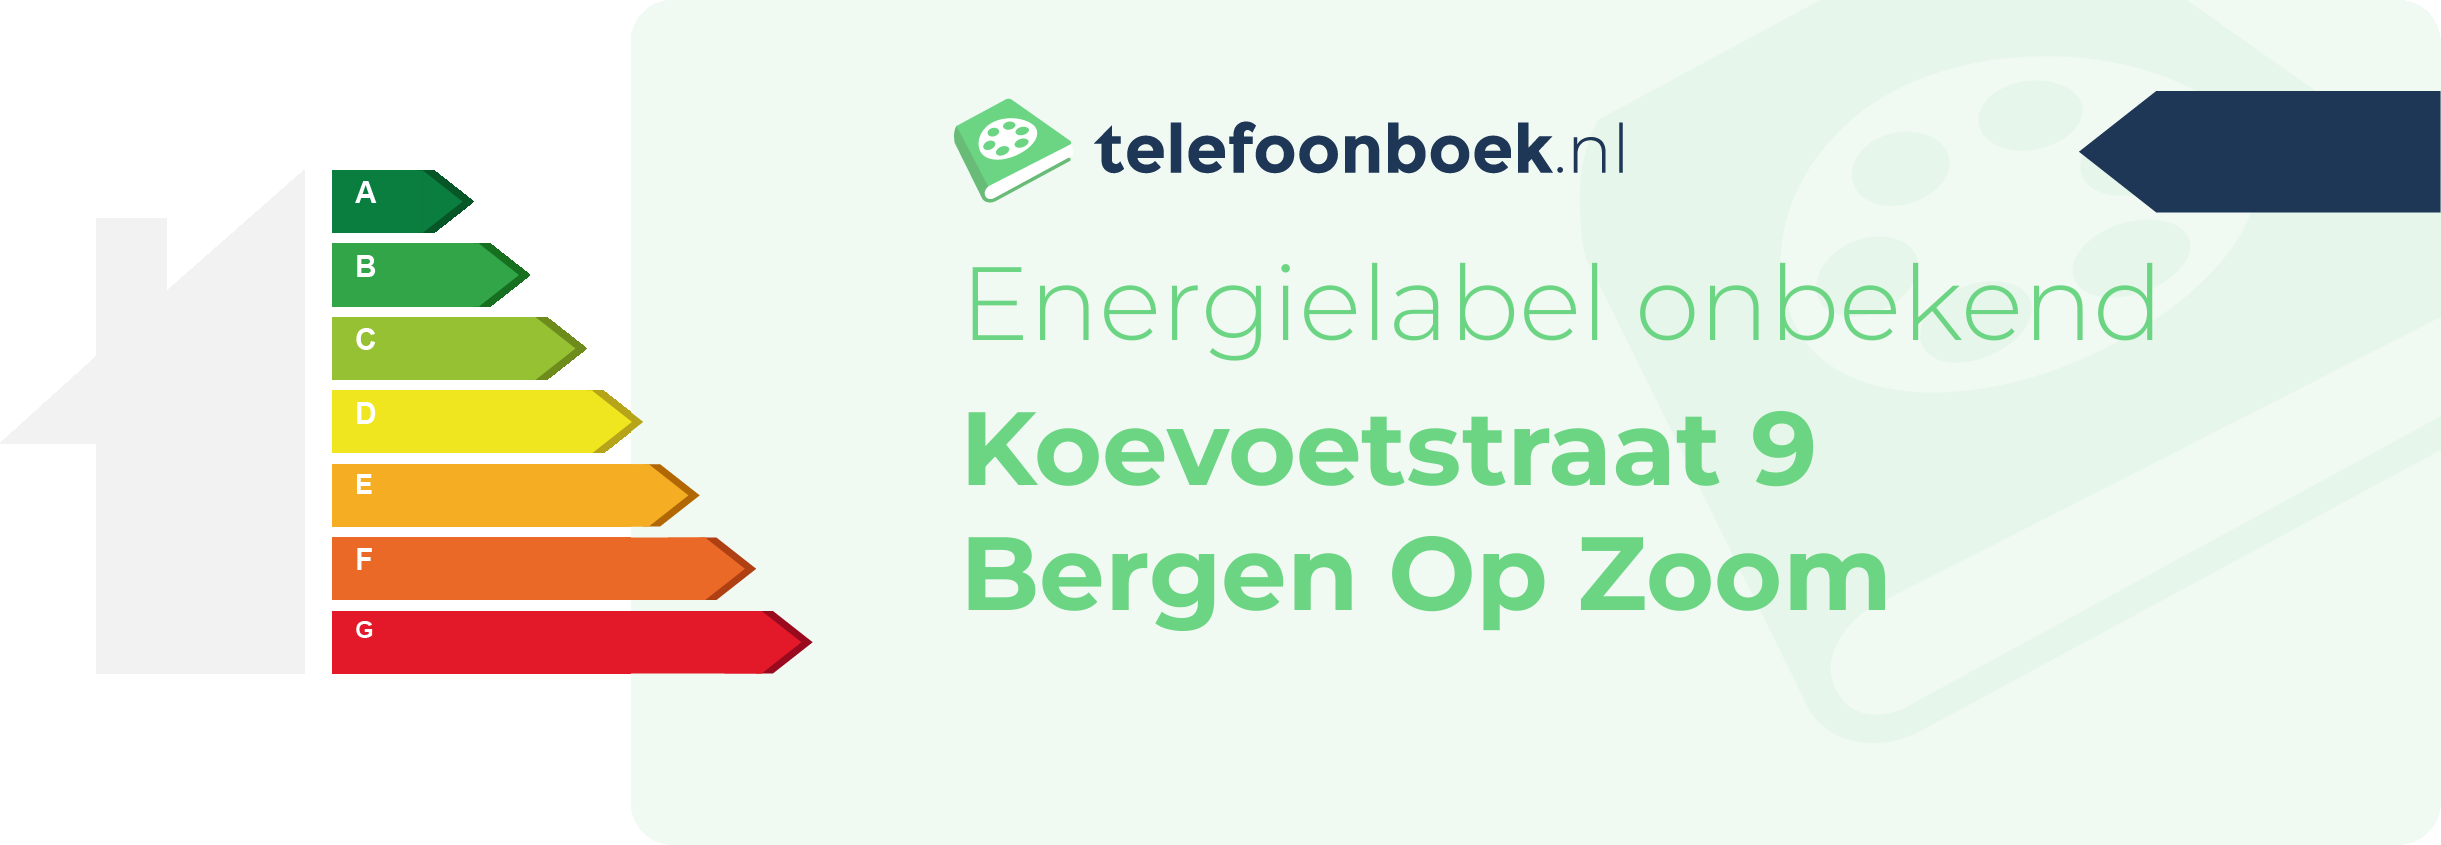 Energielabel Koevoetstraat 9 Bergen Op Zoom